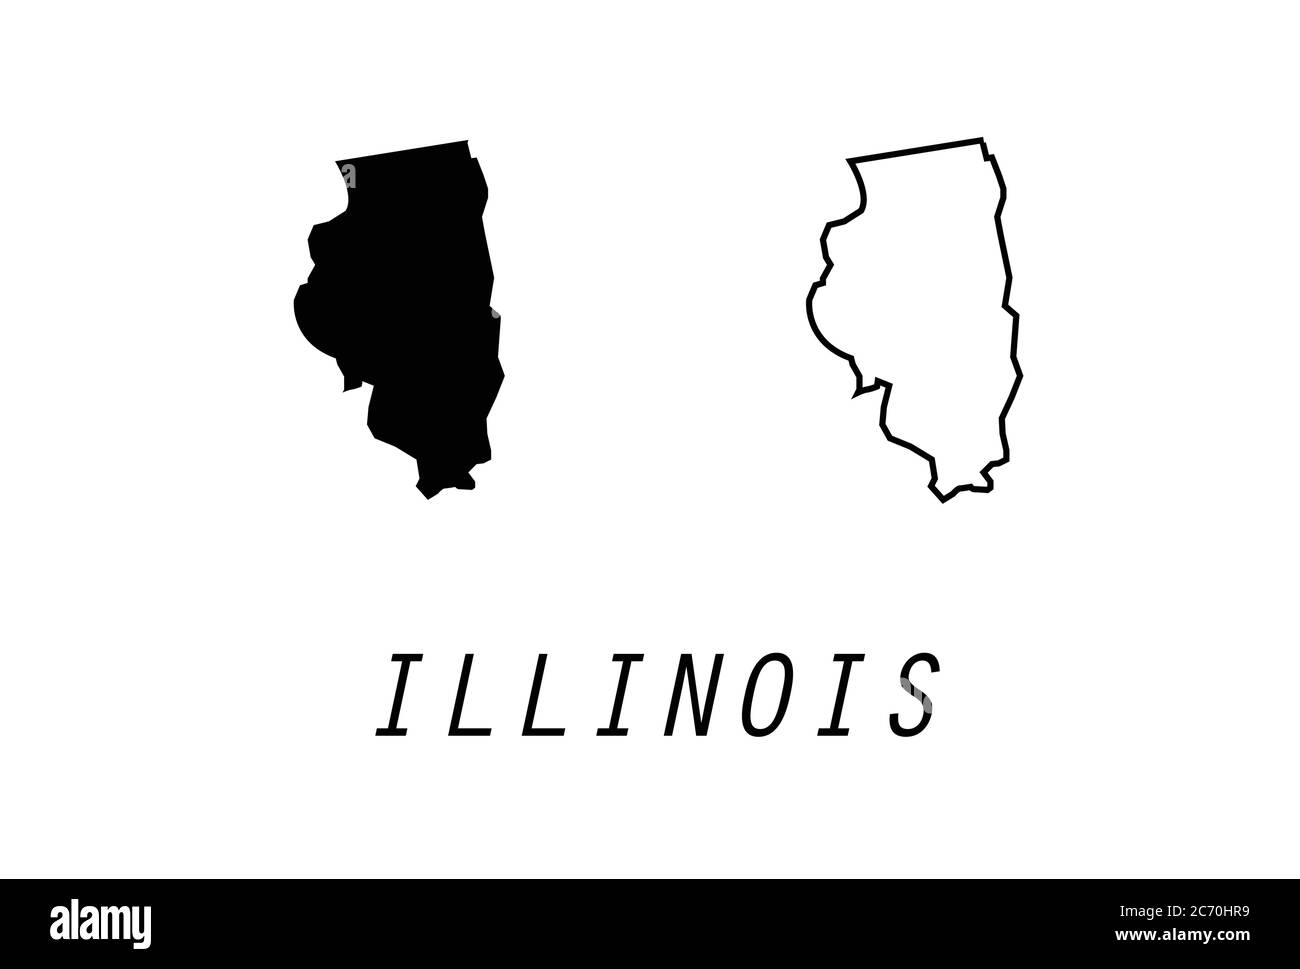 Illustrazione vettoriale degli Stati Uniti con il profilo della mappa dell'Illinois Illustrazione Vettoriale